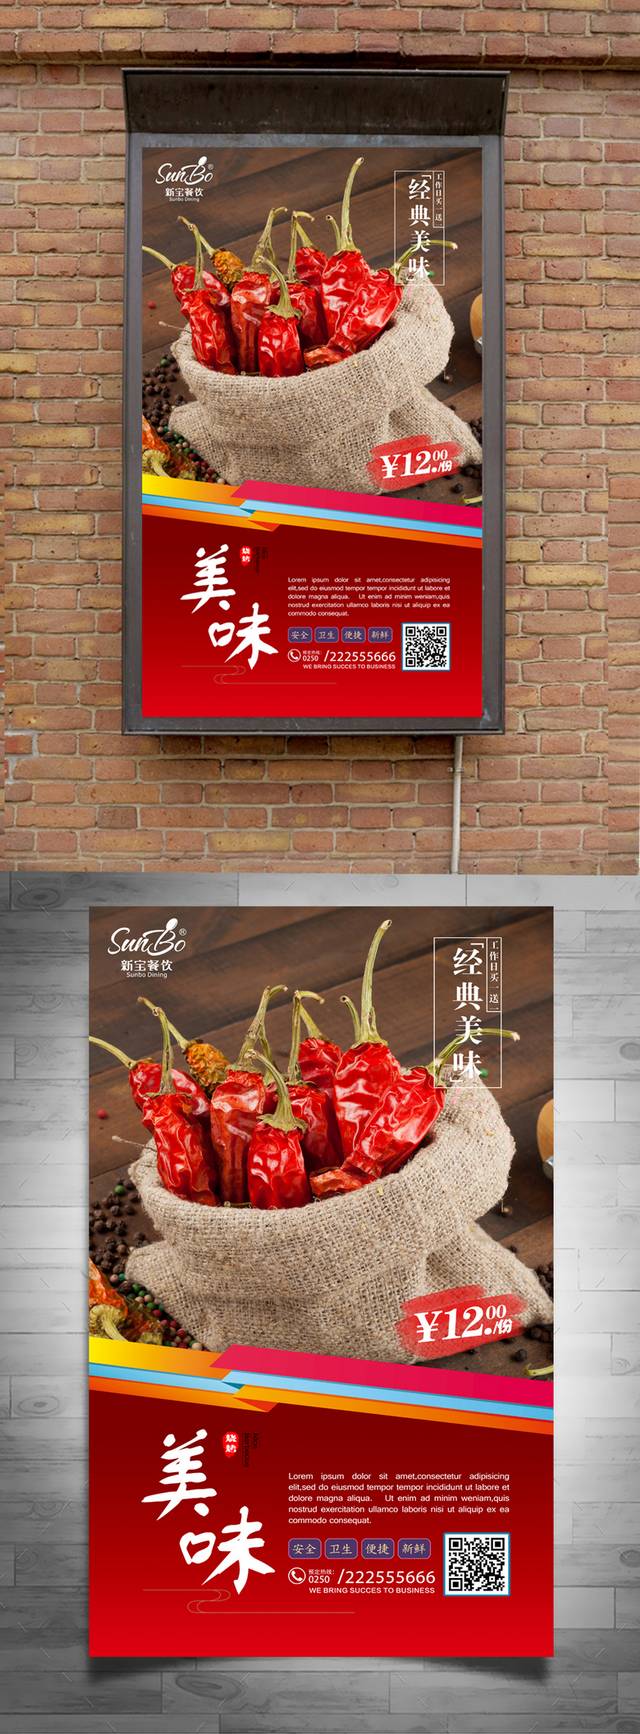 辣椒美食促销海报